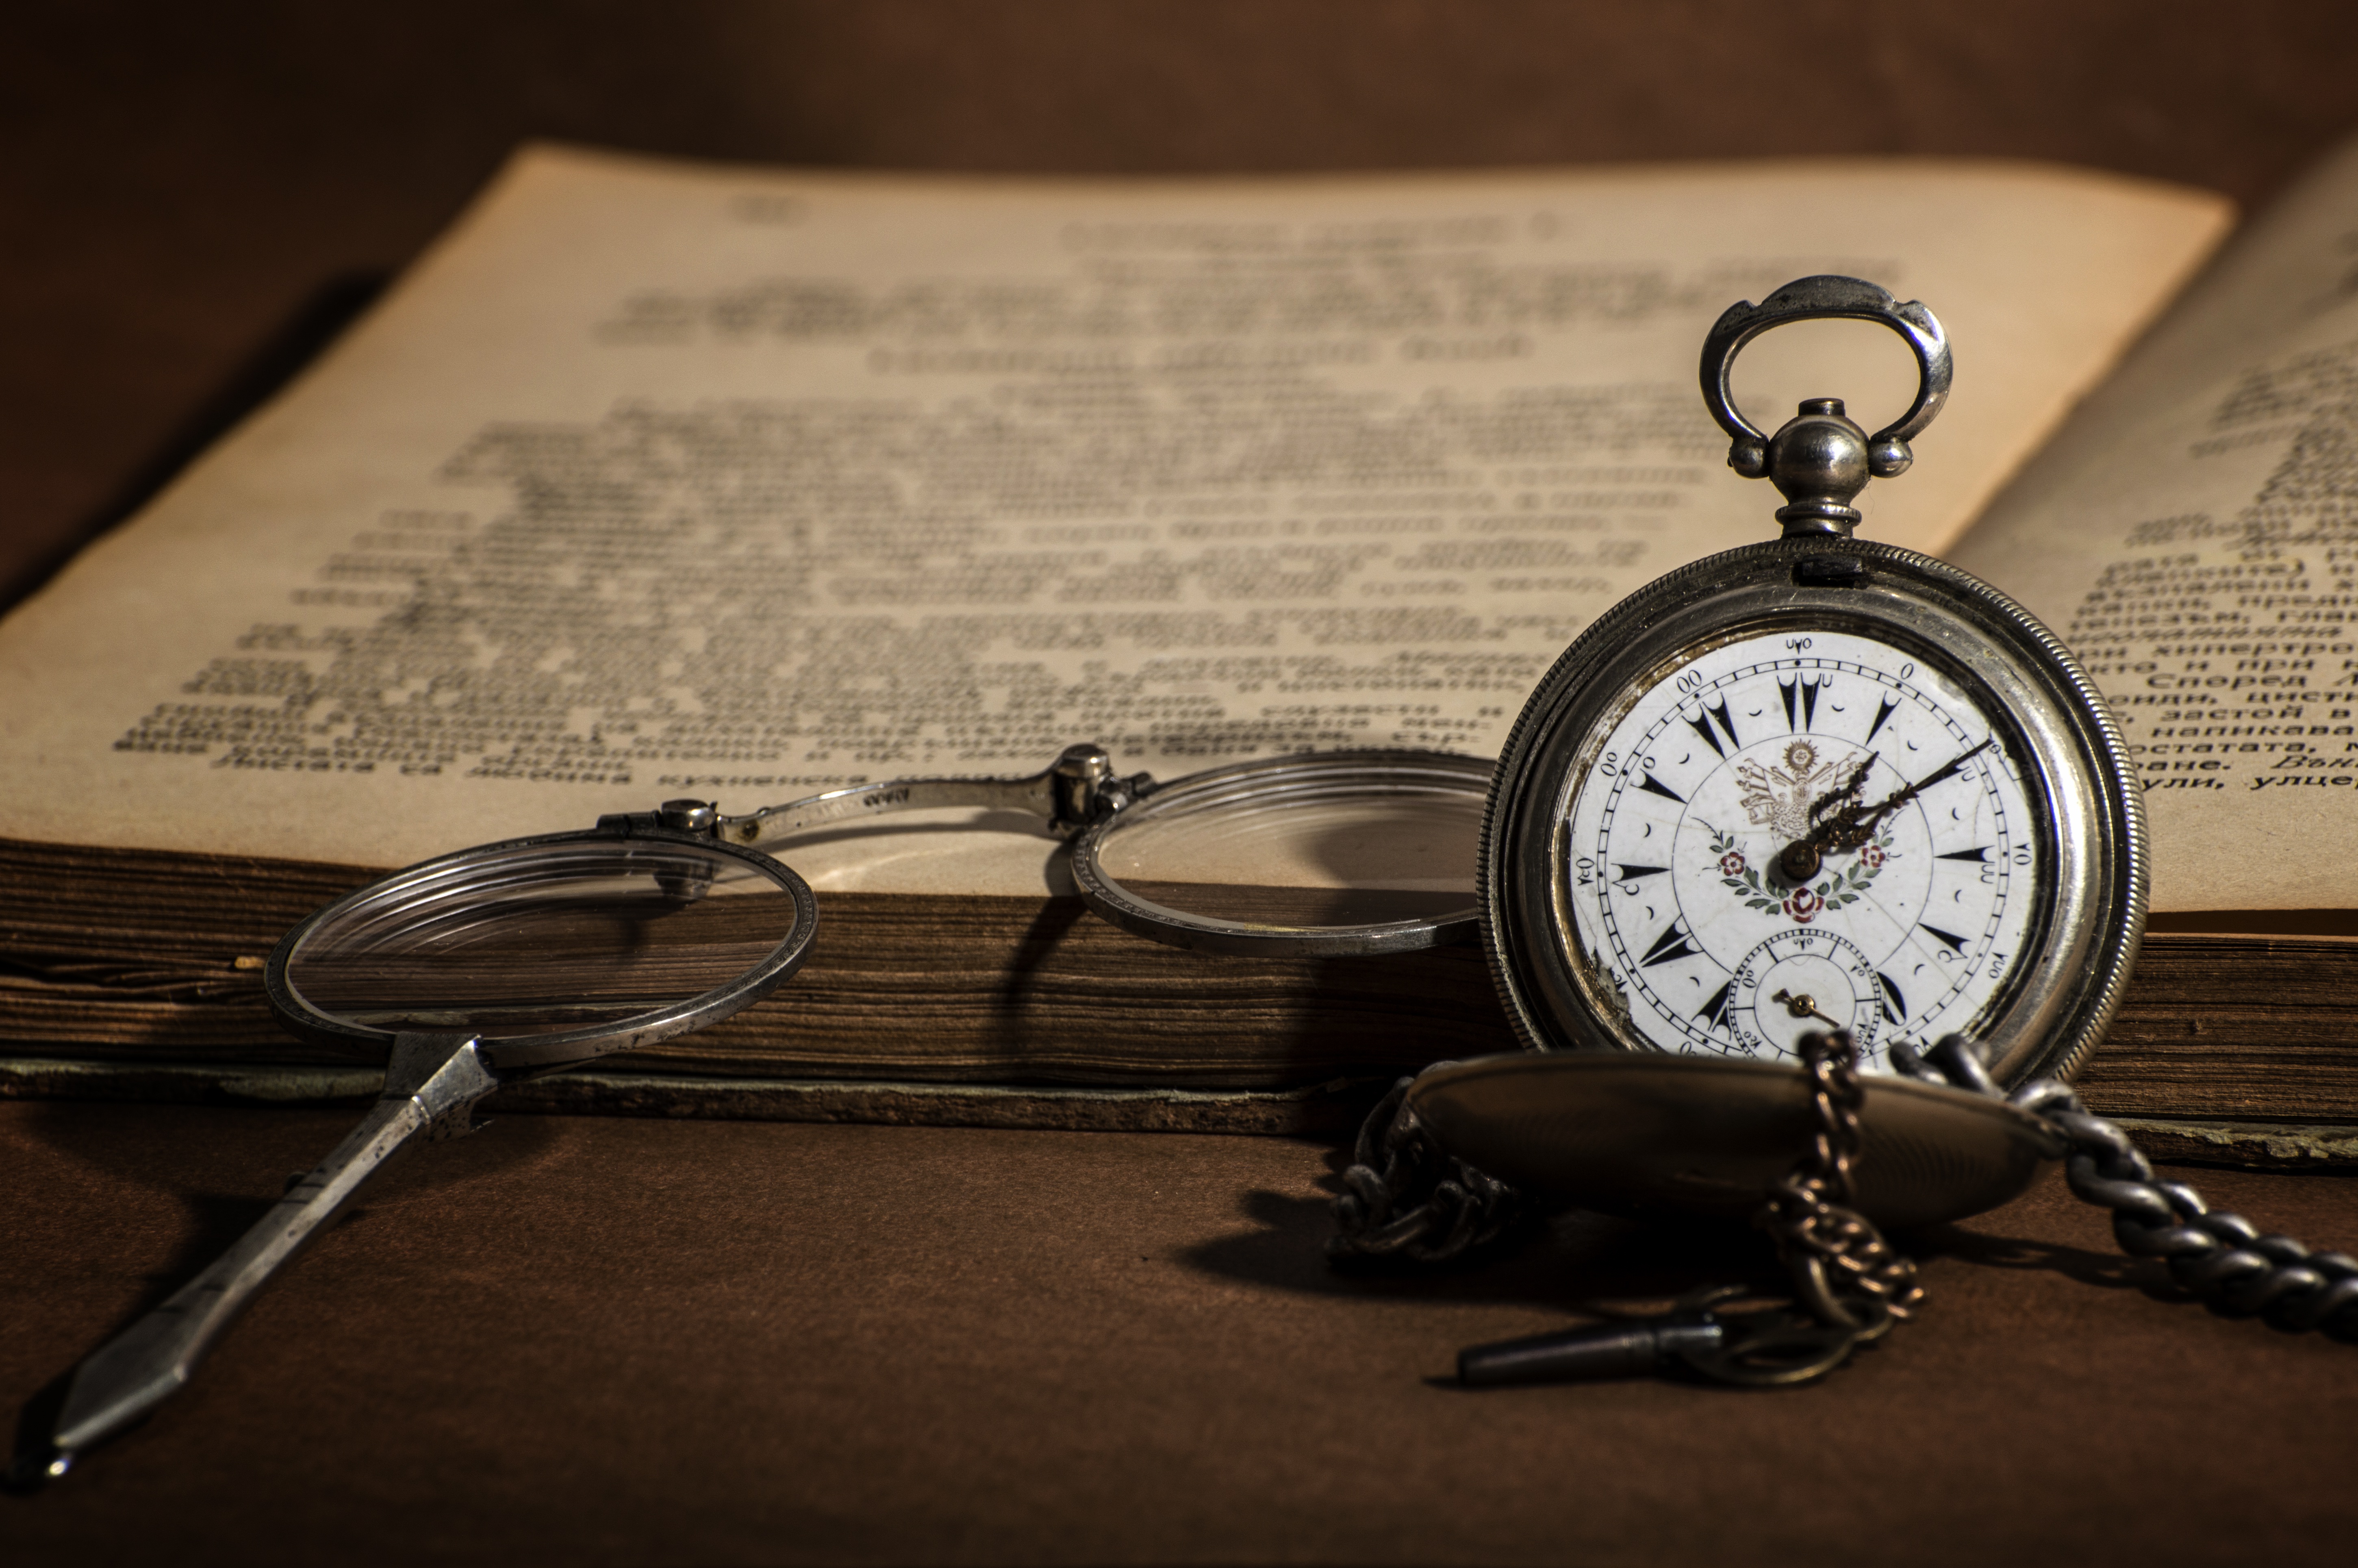 Часы лежат на столе. Старинные часы. Старинные карманные часы. Старинные карманные часы на столе. Книга и часы.